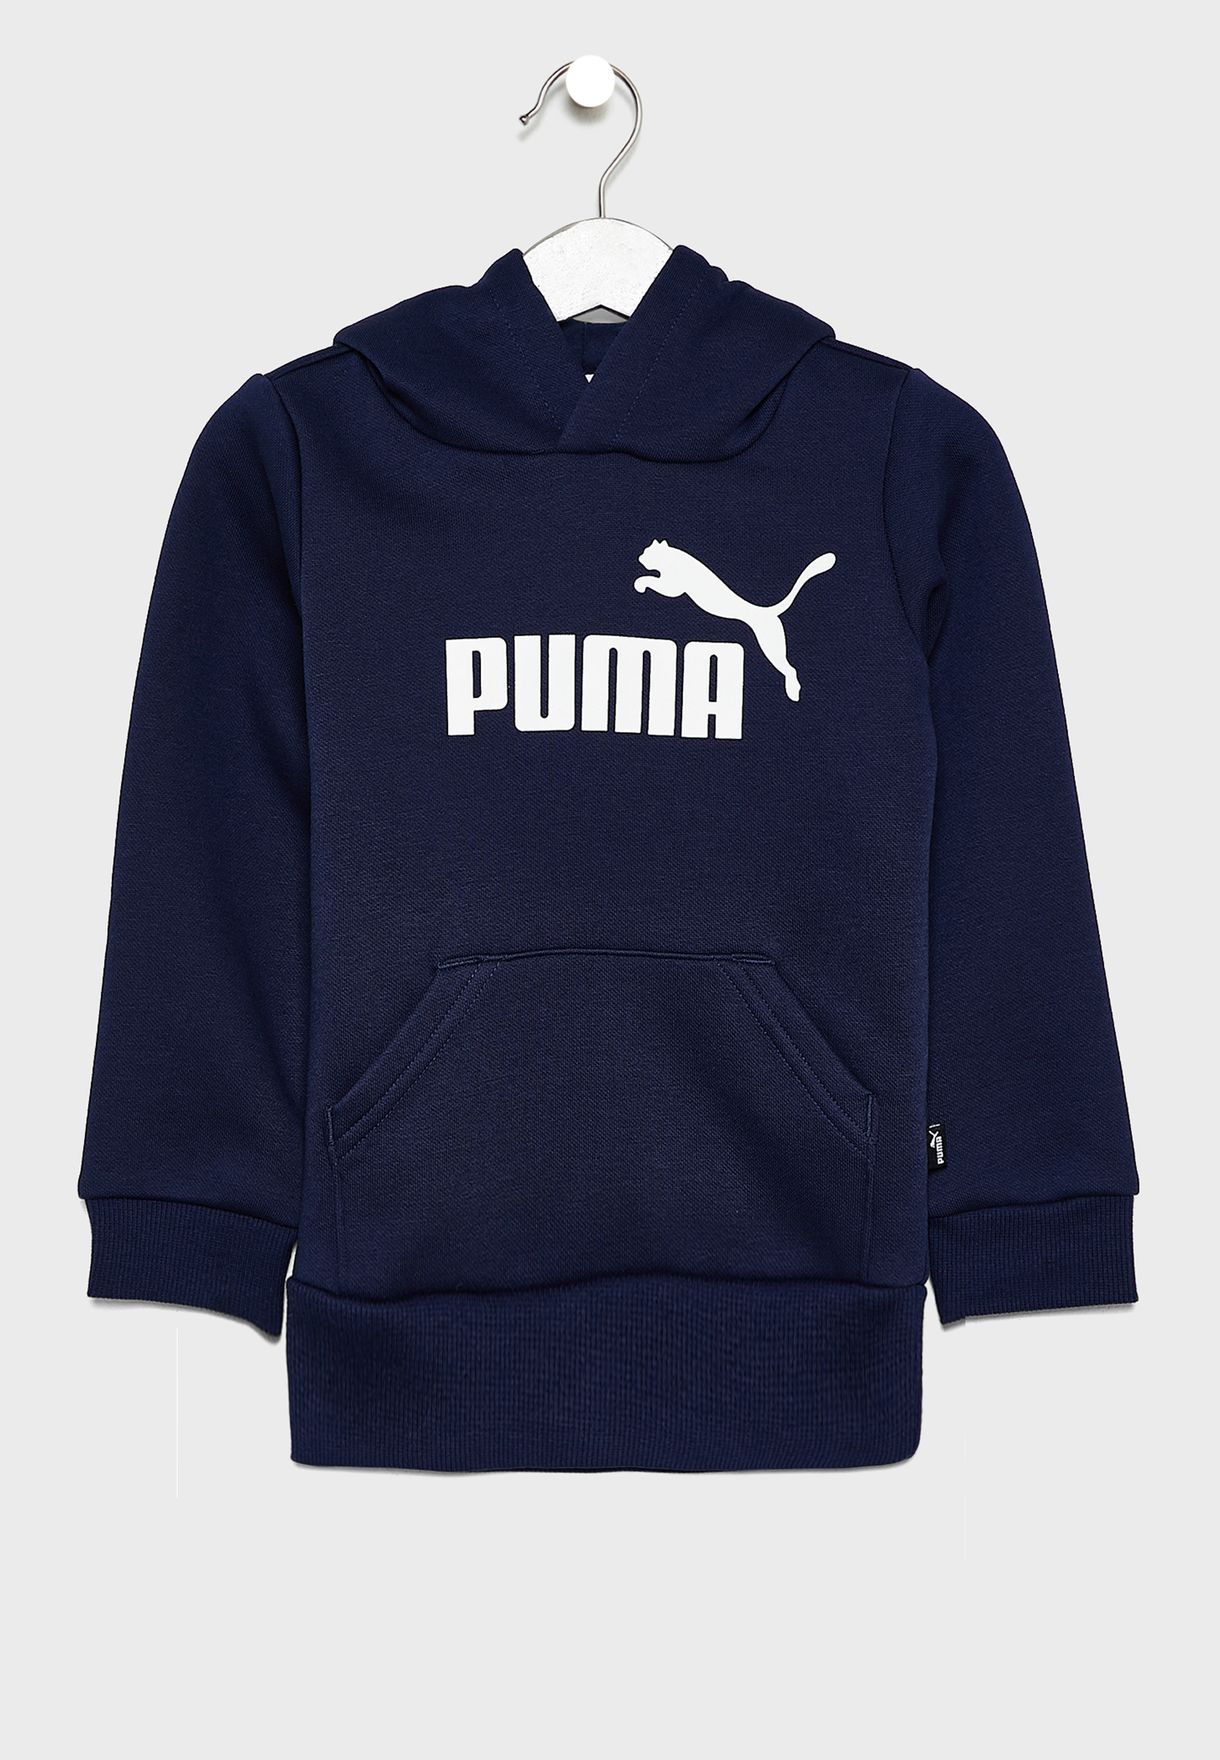 Buy Puma Navy Kids Essential Hoodie for 